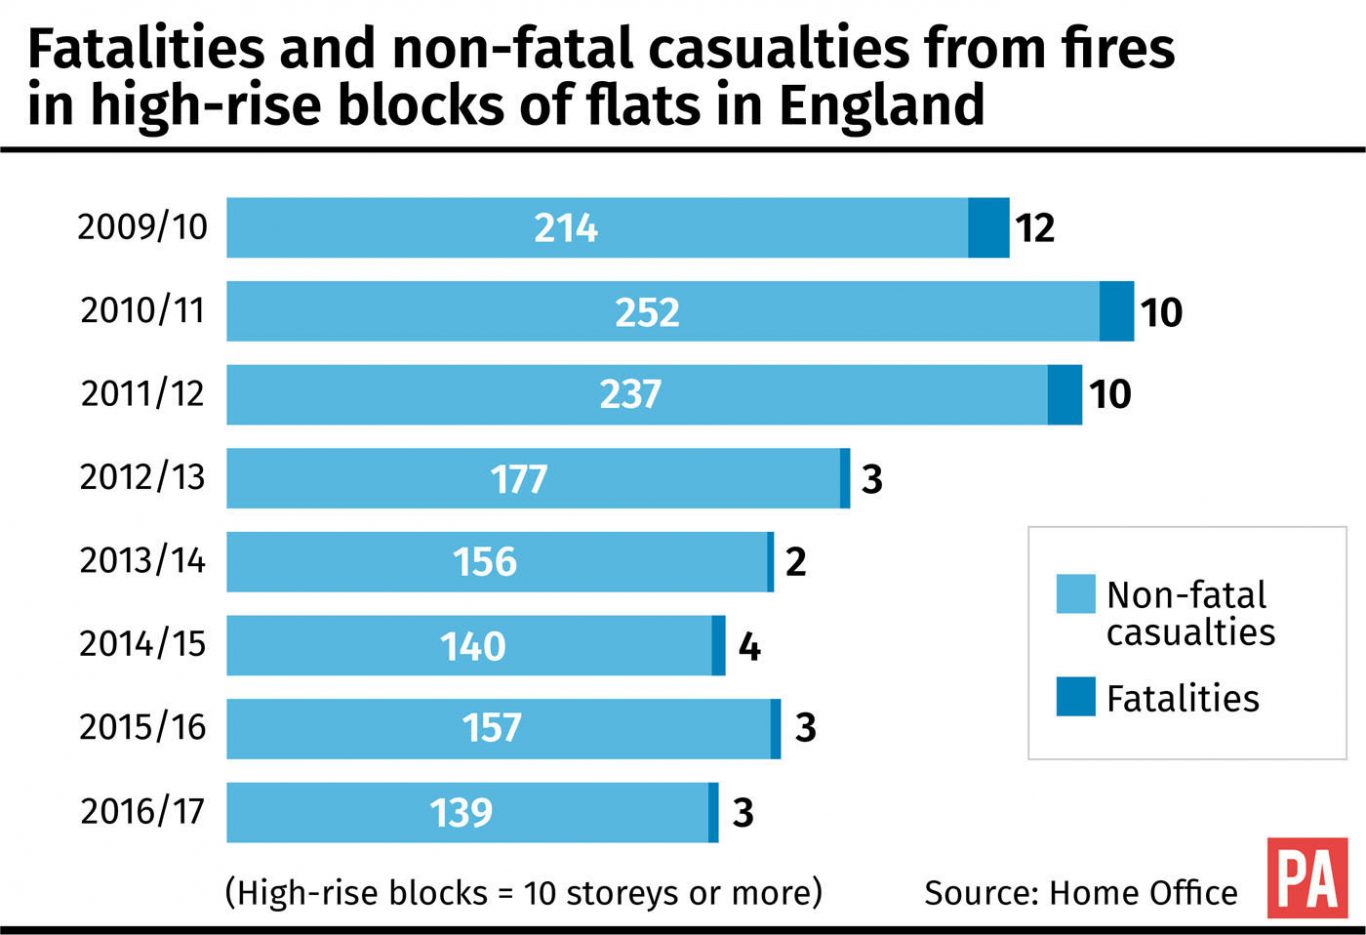 Fire statistics